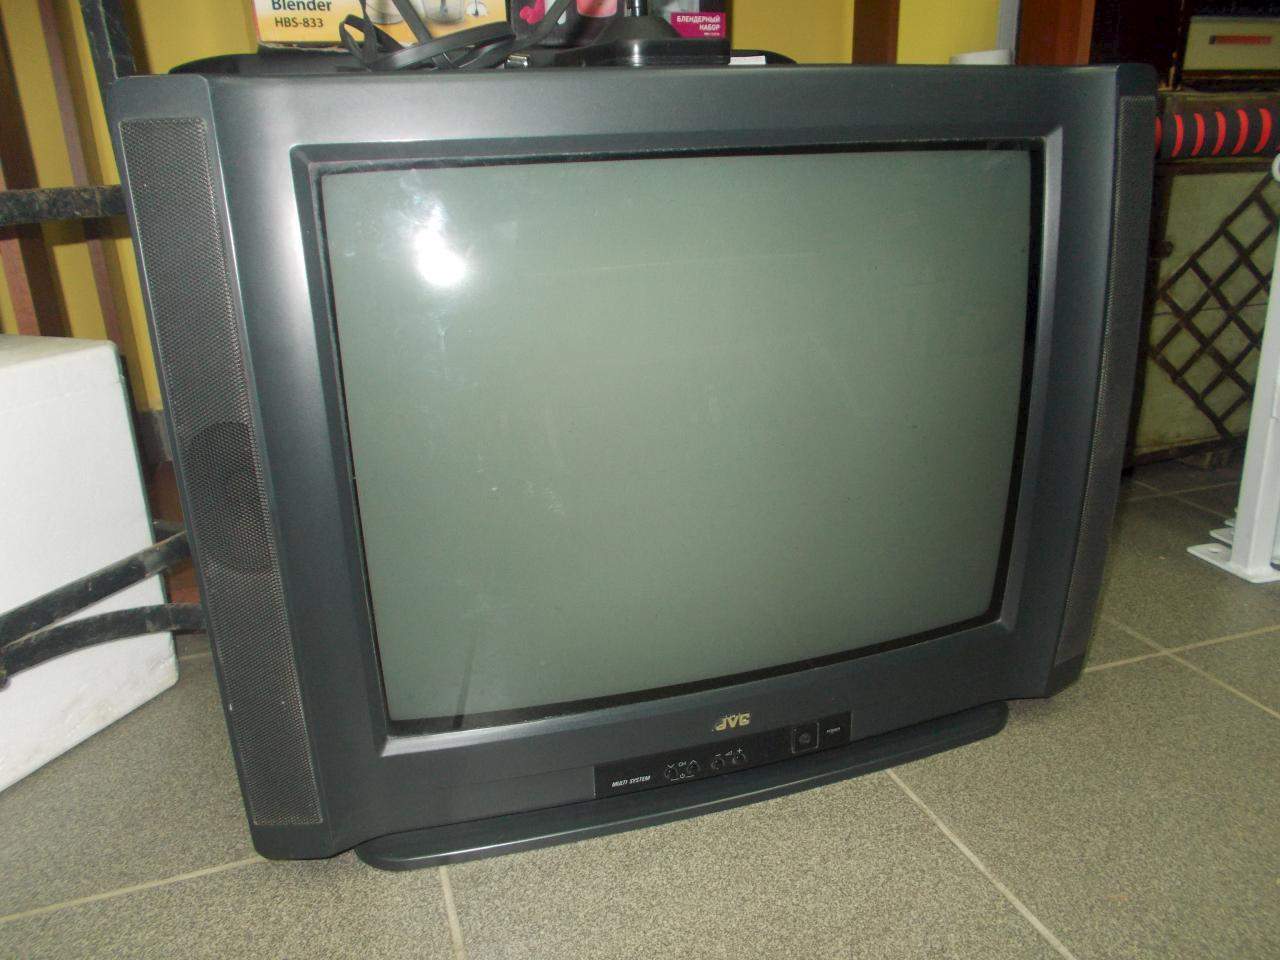 Купить телевизор в москве бу на авито. Daewoo 14 дюймов кинескопный. Телевизор Sharp ЭЛТ 21 дюйм. LG ЭЛТ 14 дюймов. Телевизор LG 14 дюймов ЭЛТ.